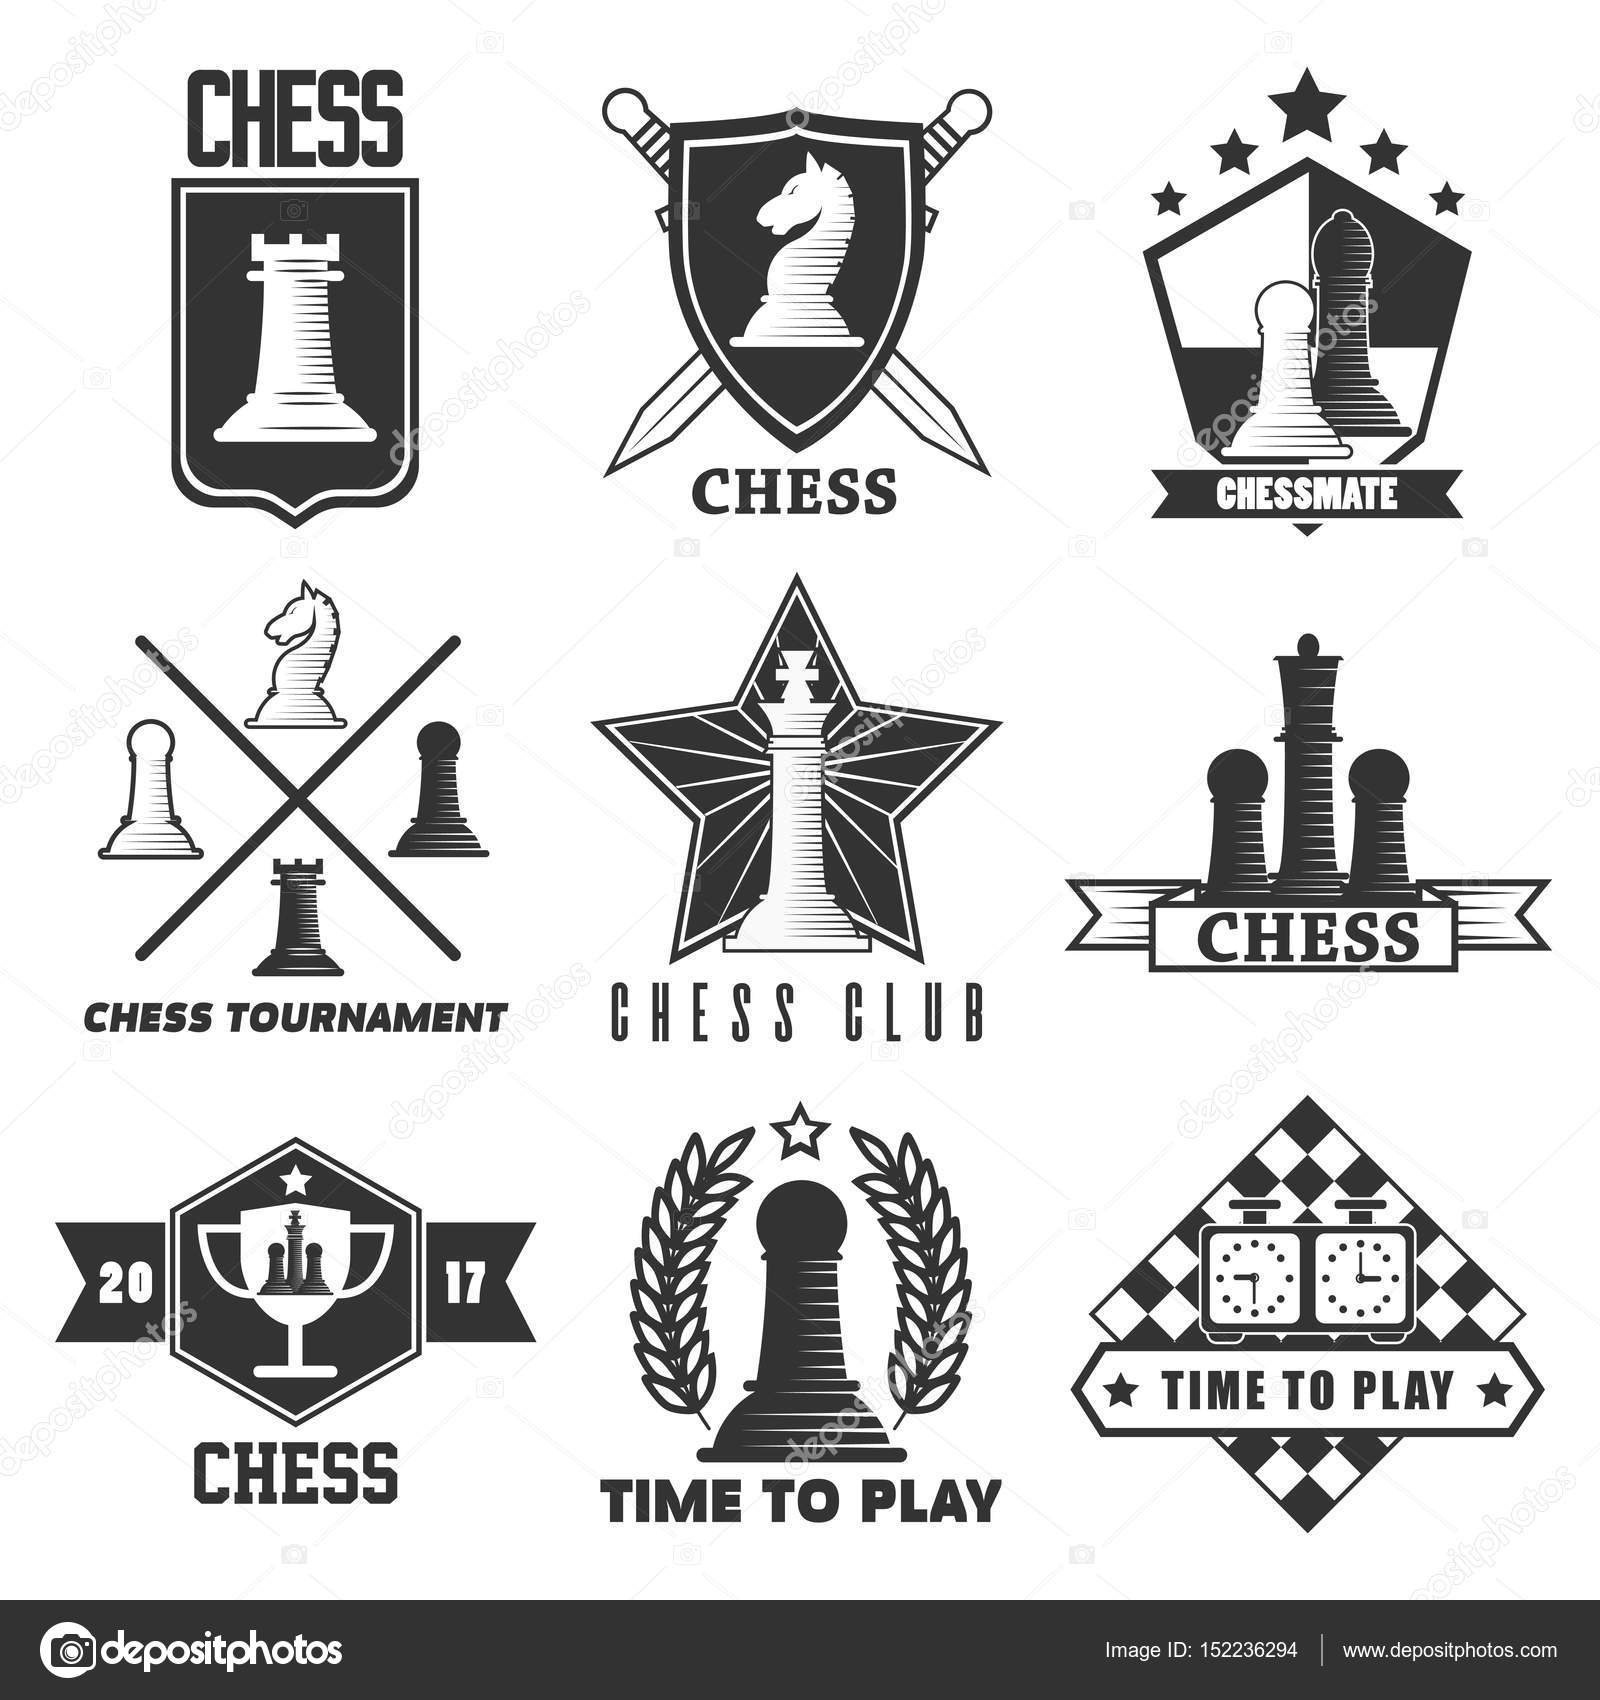 Xadrez e rei peça logotipo ilustração vetorial vintage ícone de modelo  design gráfico. sinal retro ou símbolo para torneio de xadrez ou clube com  escudo emblema conceito preto e branco